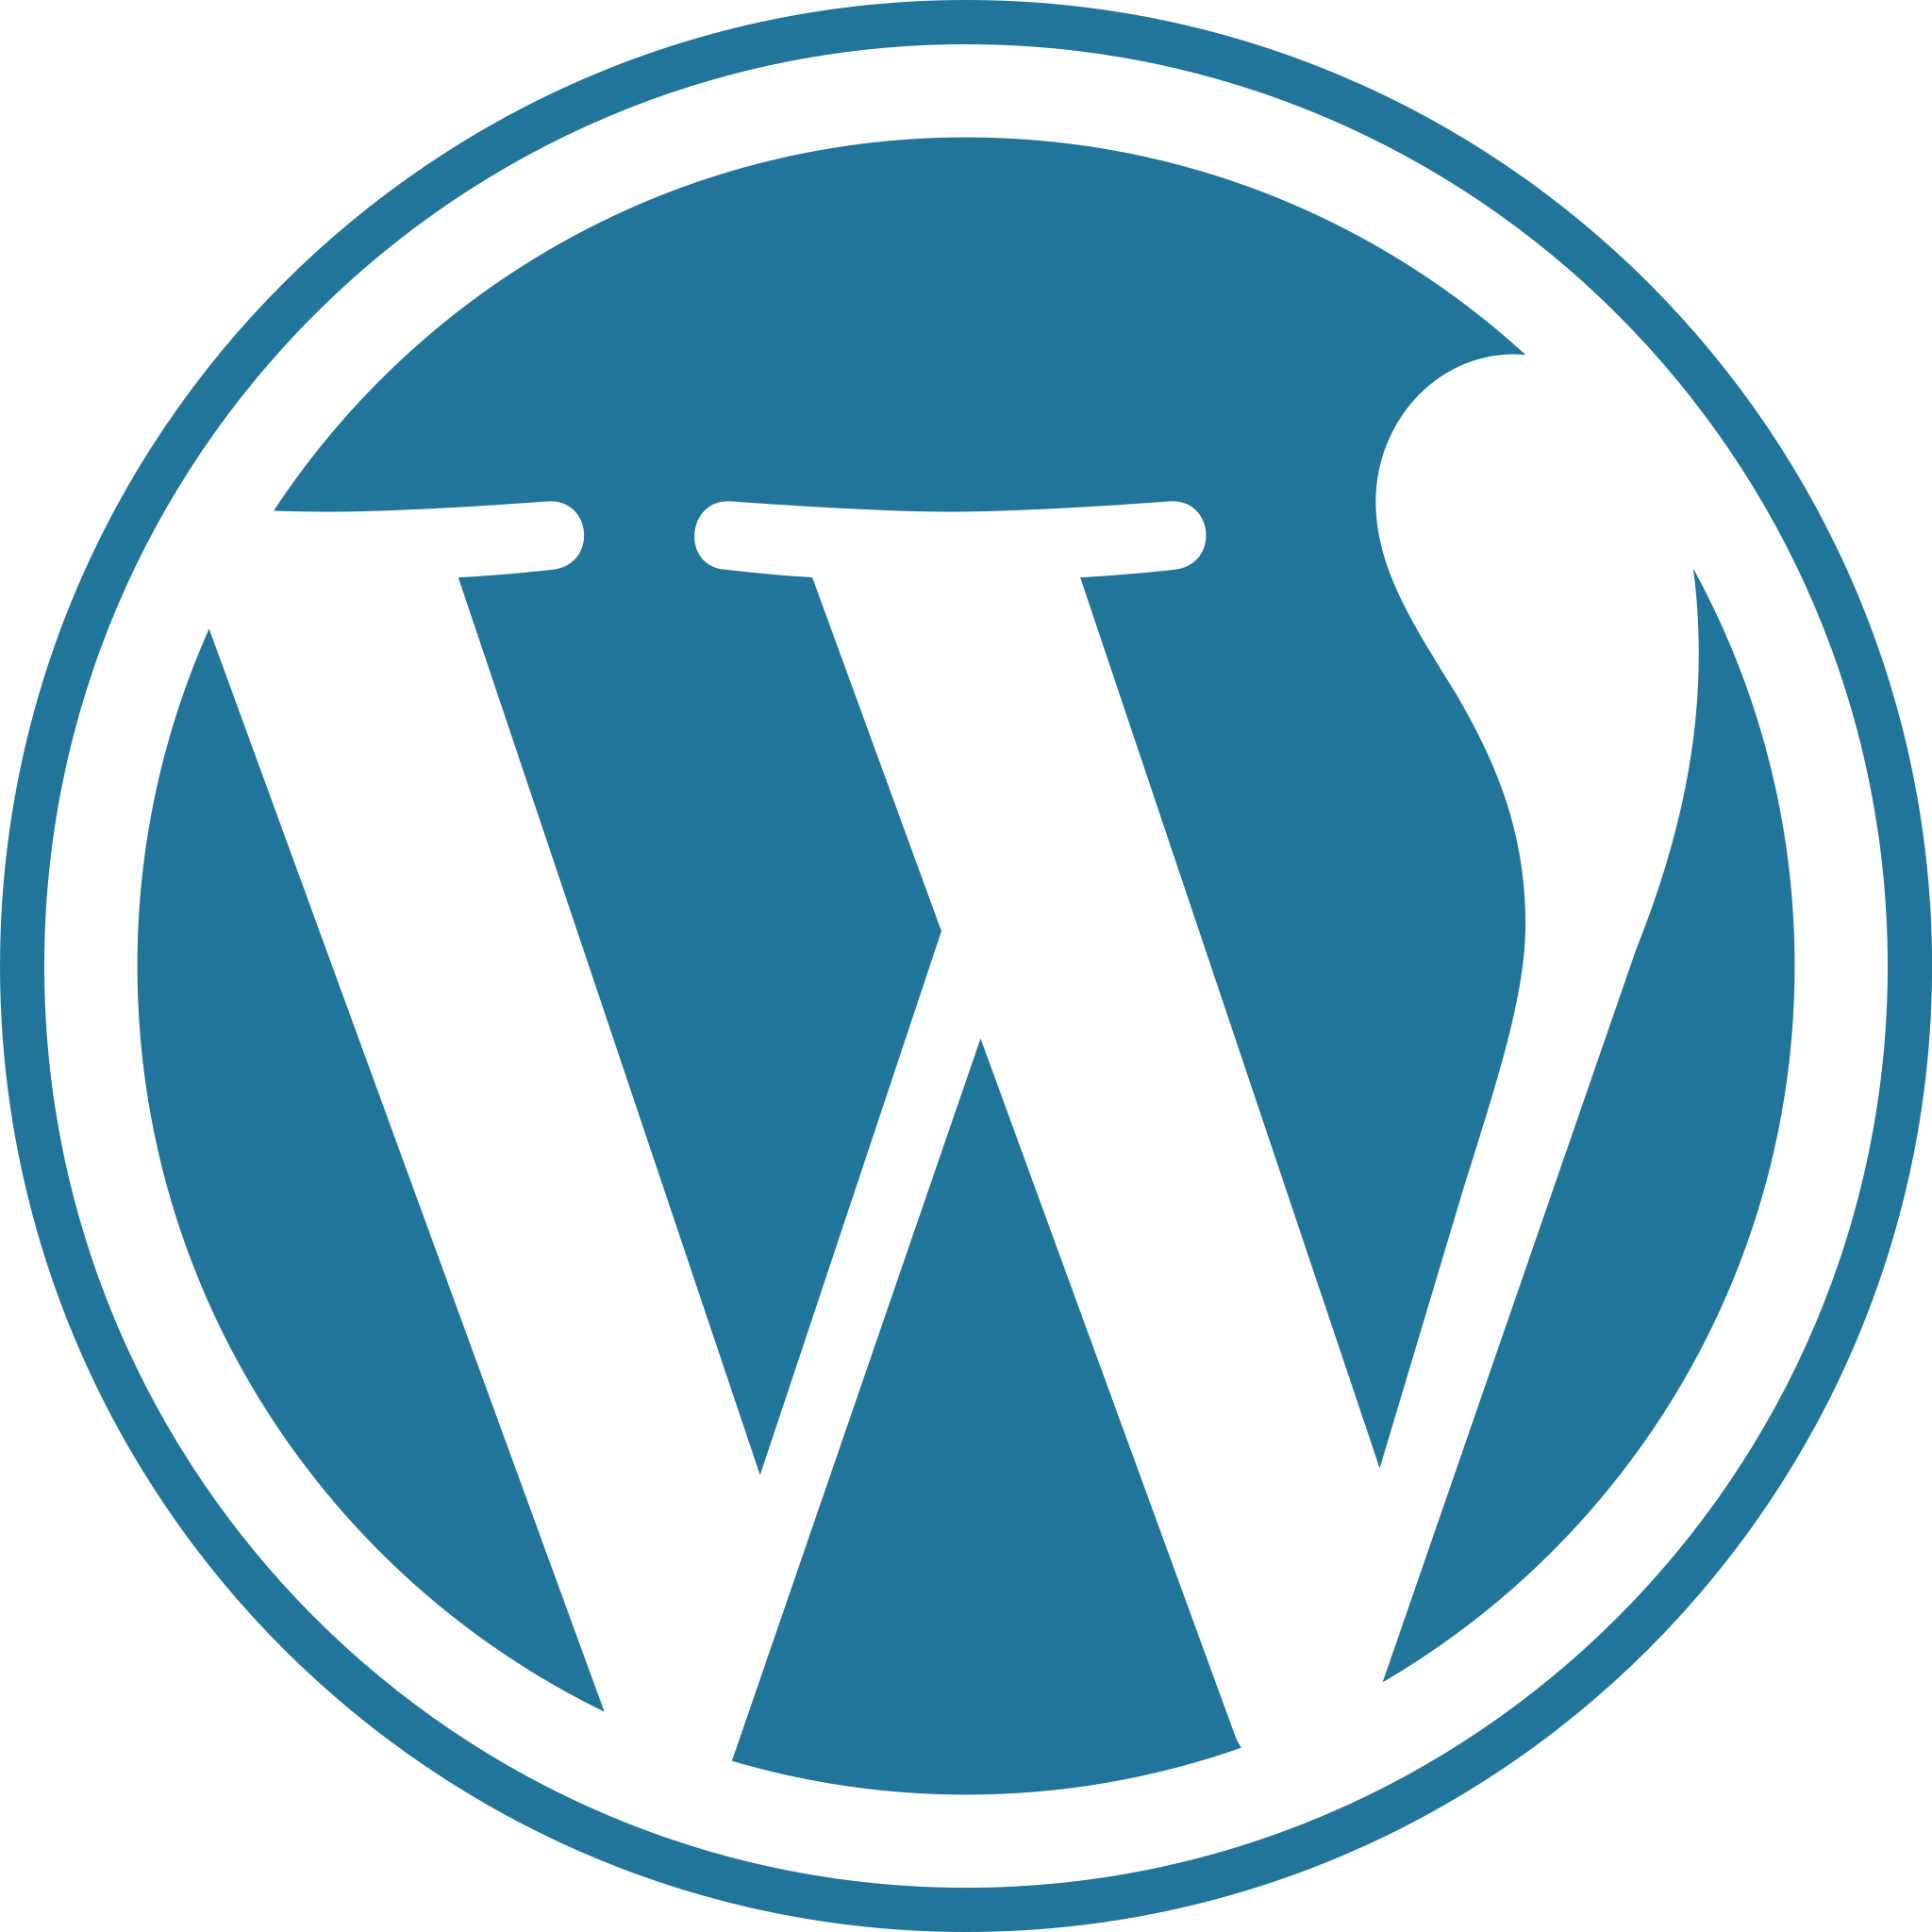 Das Wordpress-Logo, ein weißes W in einem blauen Kreis, wird verwendet, um zu zeigen, dass SUNZINET eine Wordpress-Agentur ist